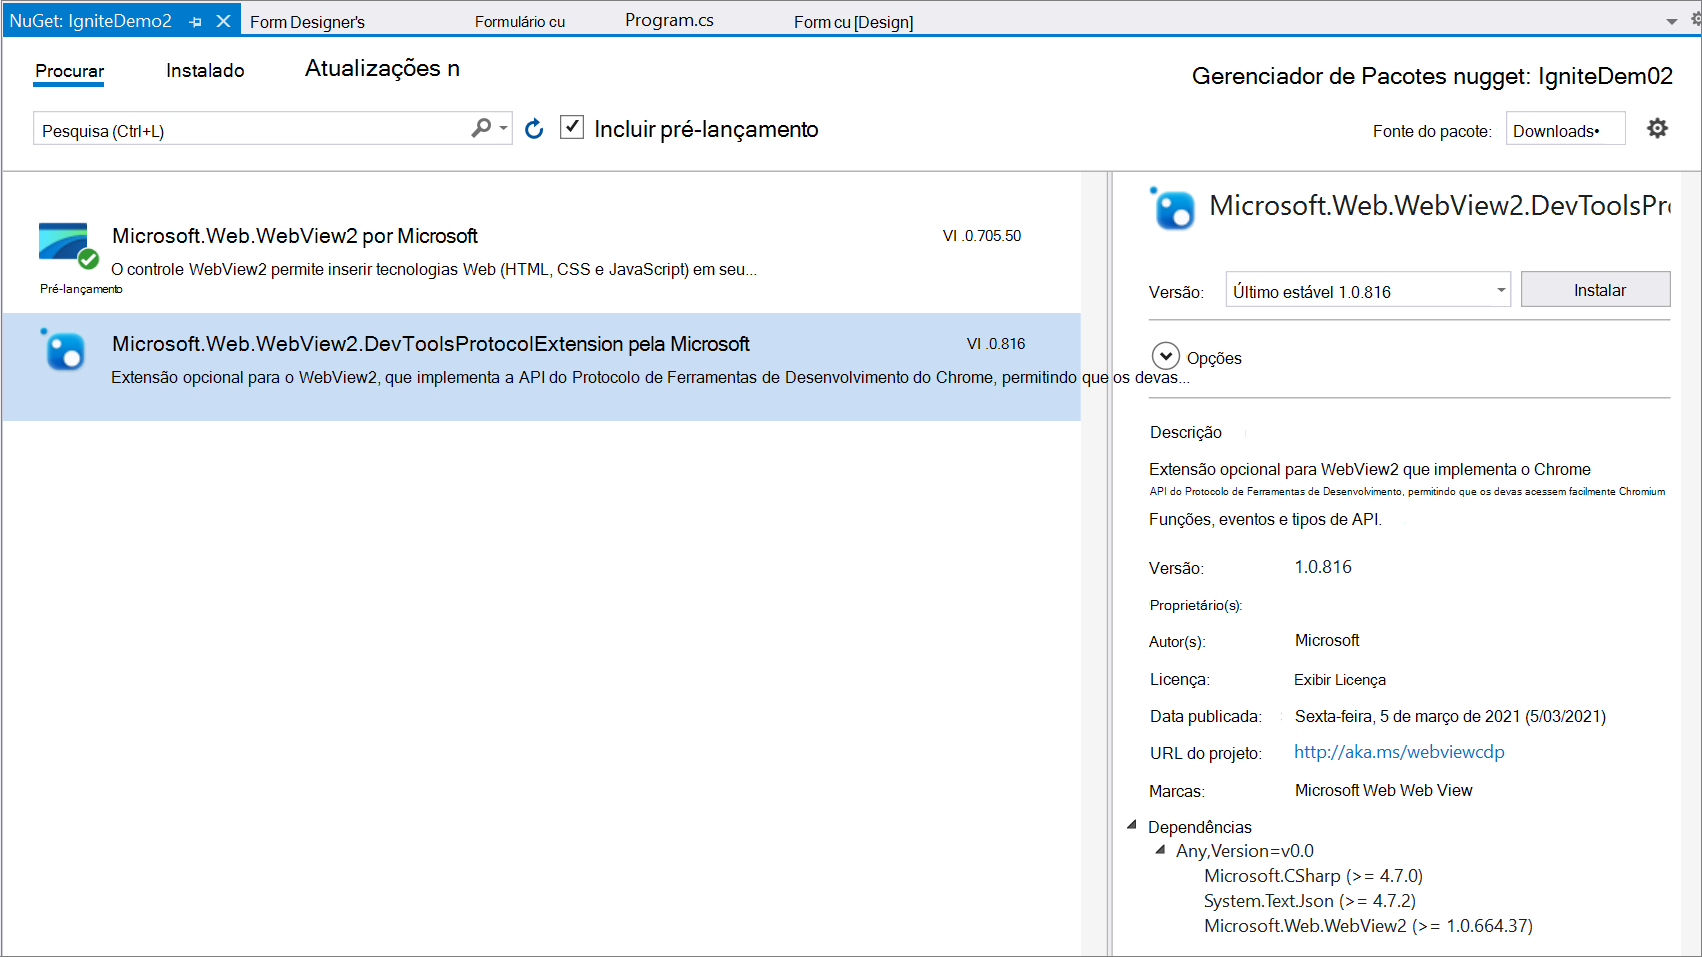 Certificando-se de que o Microsoft.Web.WebView2.DevToolsProtocolExtension seja exibido no Gerenciador de Pacotes NuGet do Visual Studio